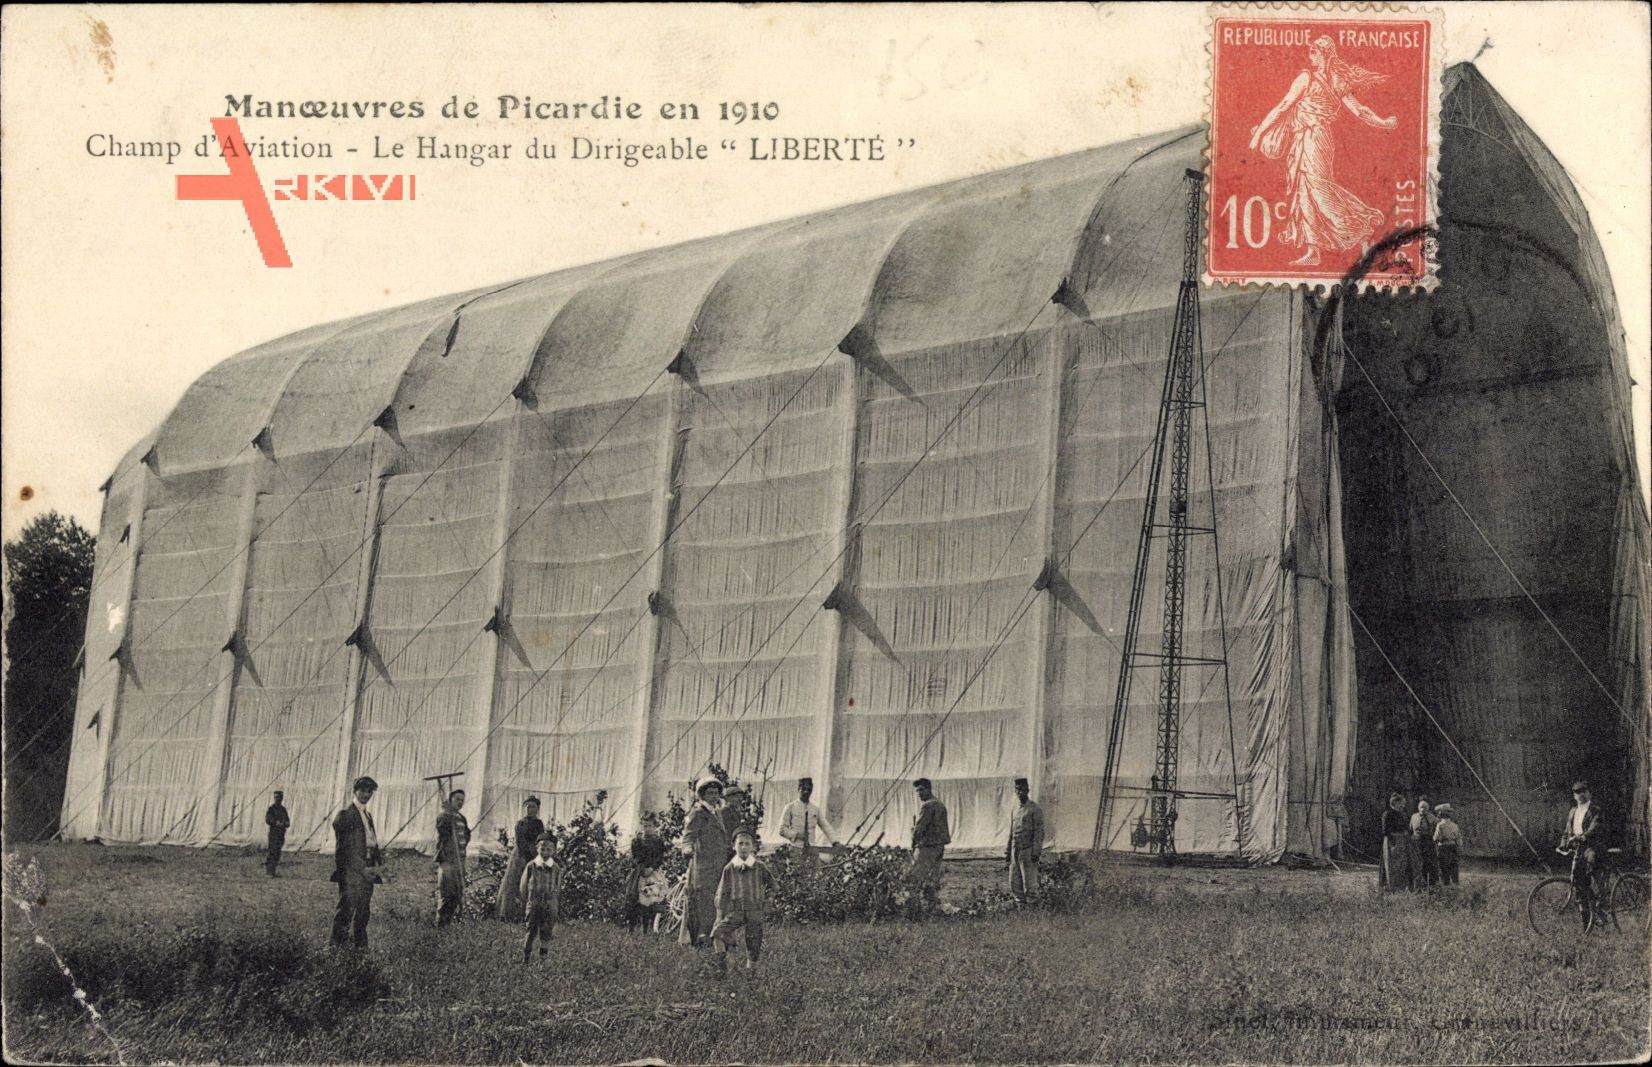 Manoeuvres de Picardie en 1910, Hangar du Dirigeable Liberte, Luftschiff